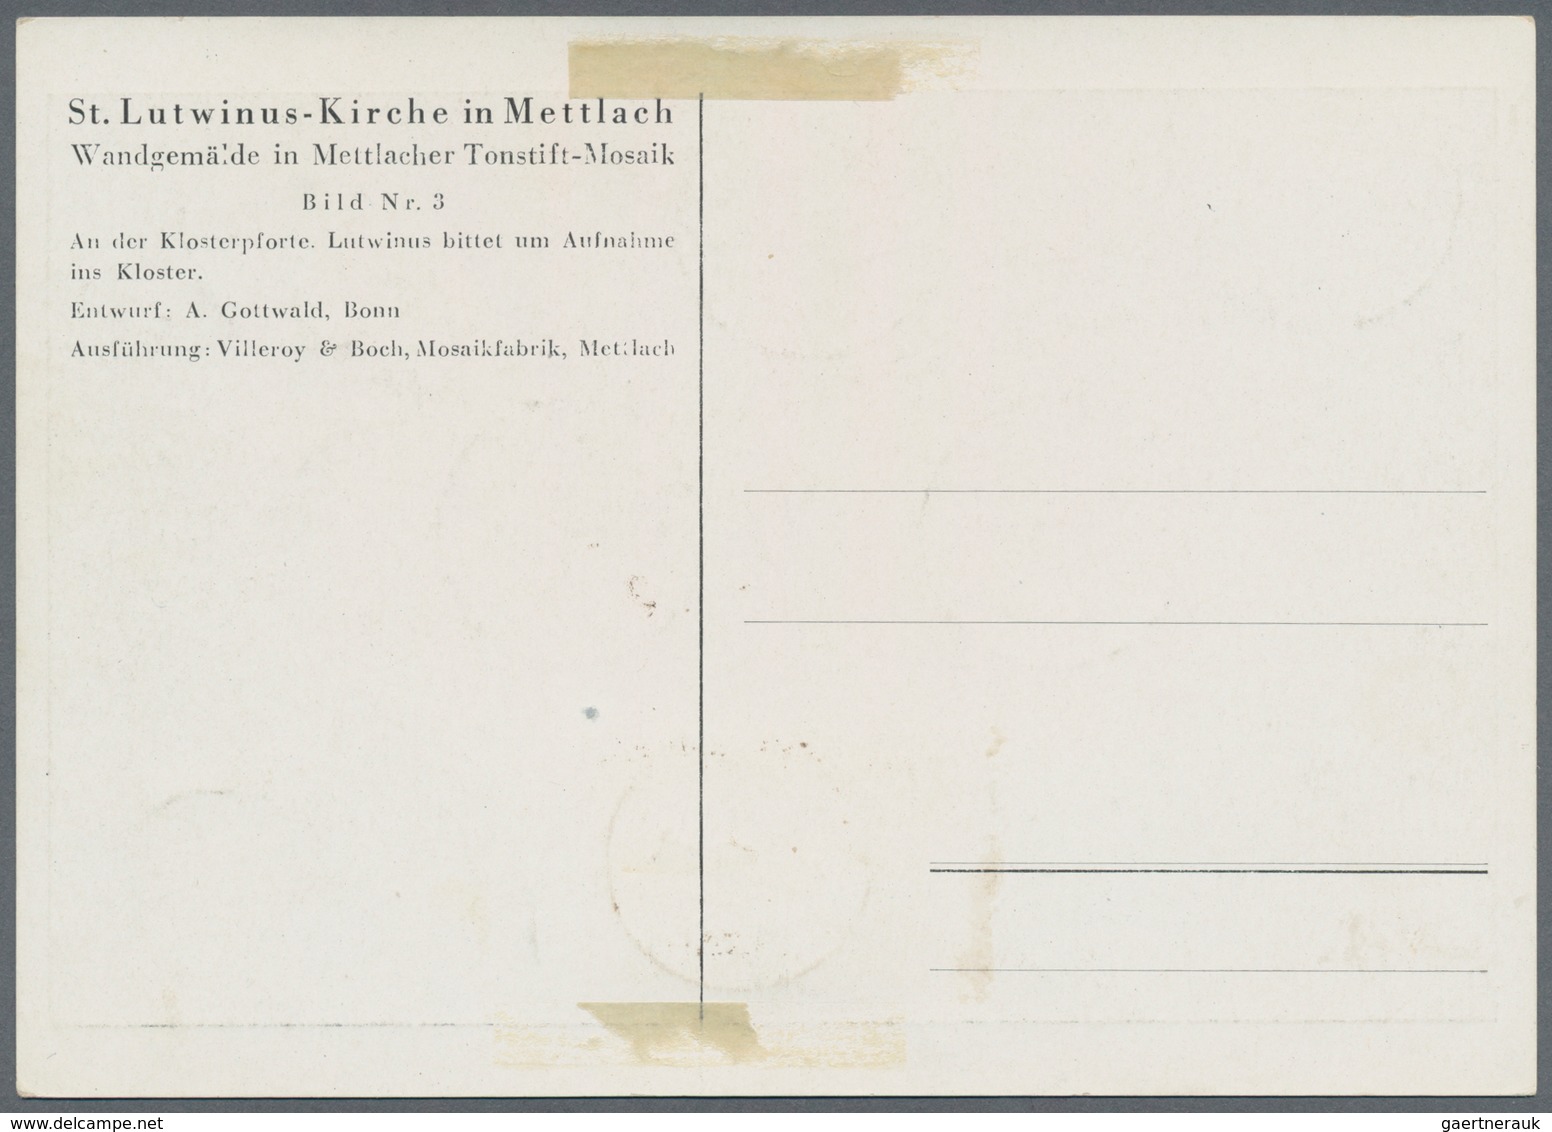 Saarland (1947/56): 1950, 8 Fr. - 50 Fr. Volkshilfe je mit Ersttagstempel "METTLACH b 10.11.50" auf